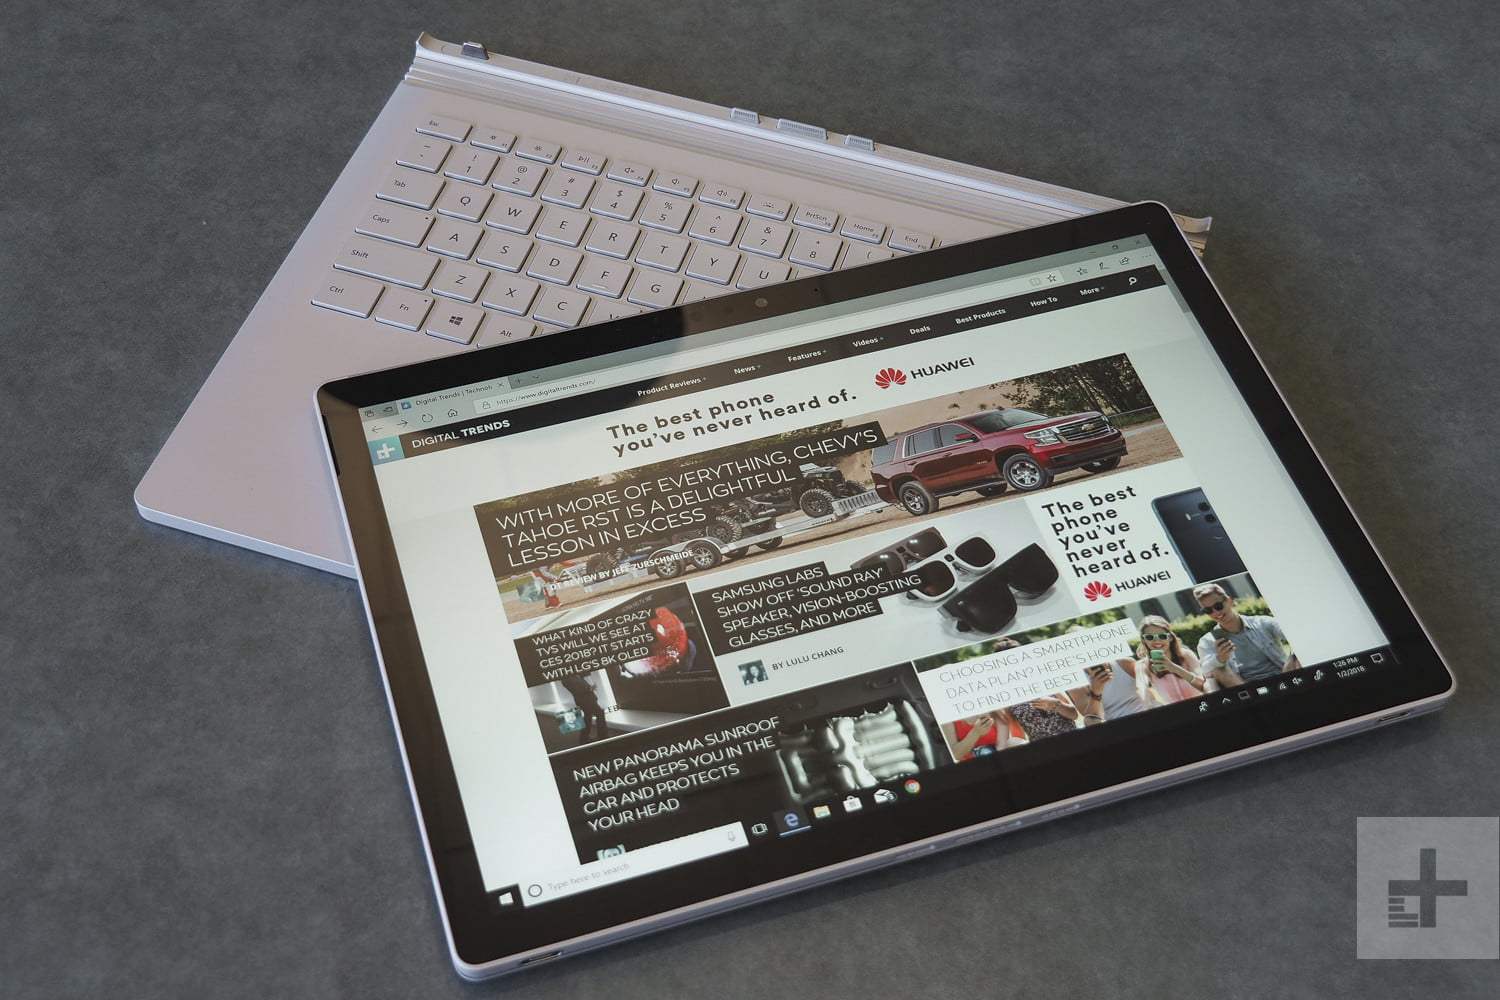 نقد و بررسی سرفیس بوک 2 نسخه 13.5 اینچ - Microsoft Surface Book 2